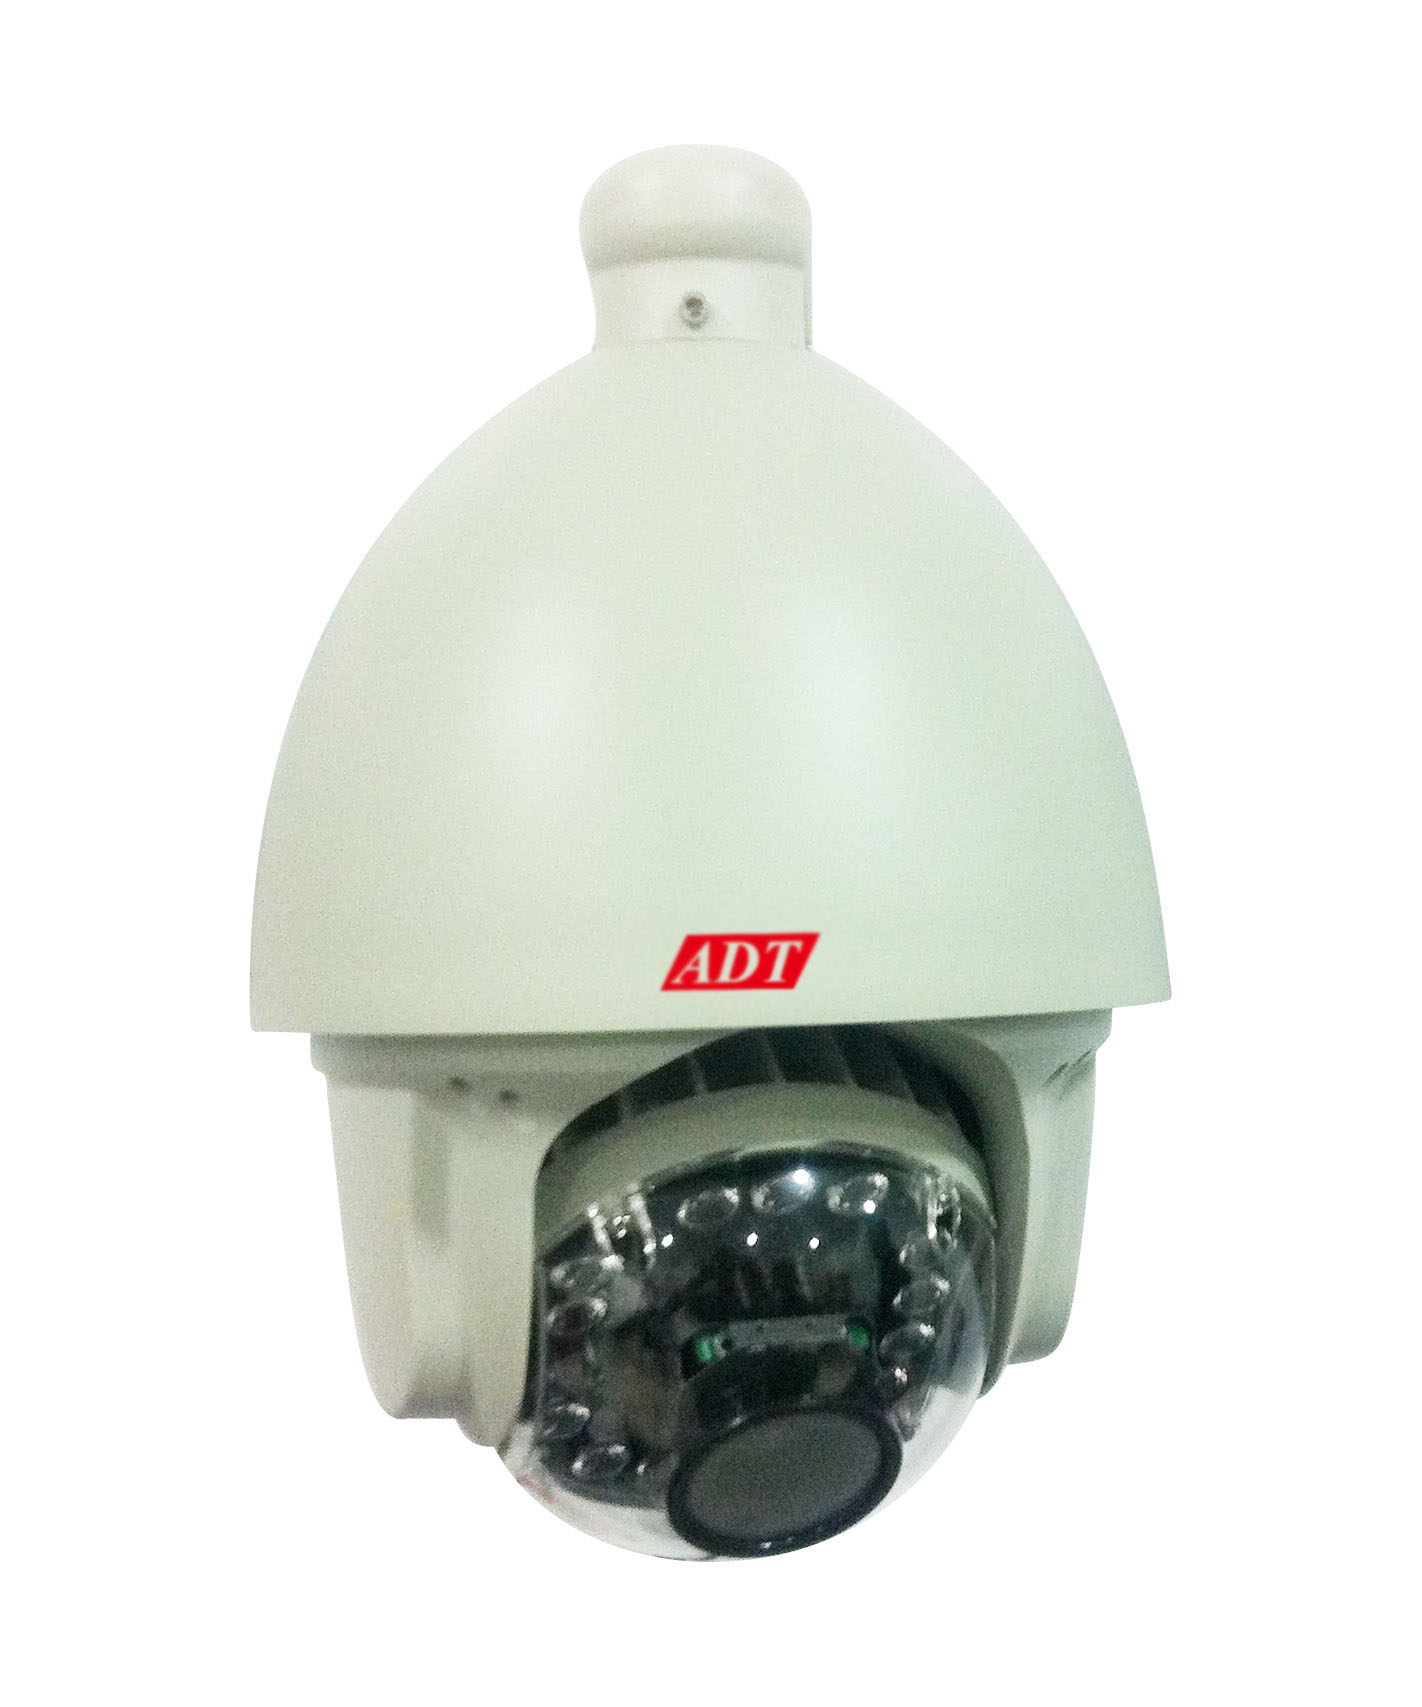 ADT1806AR红外高速球型摄像机